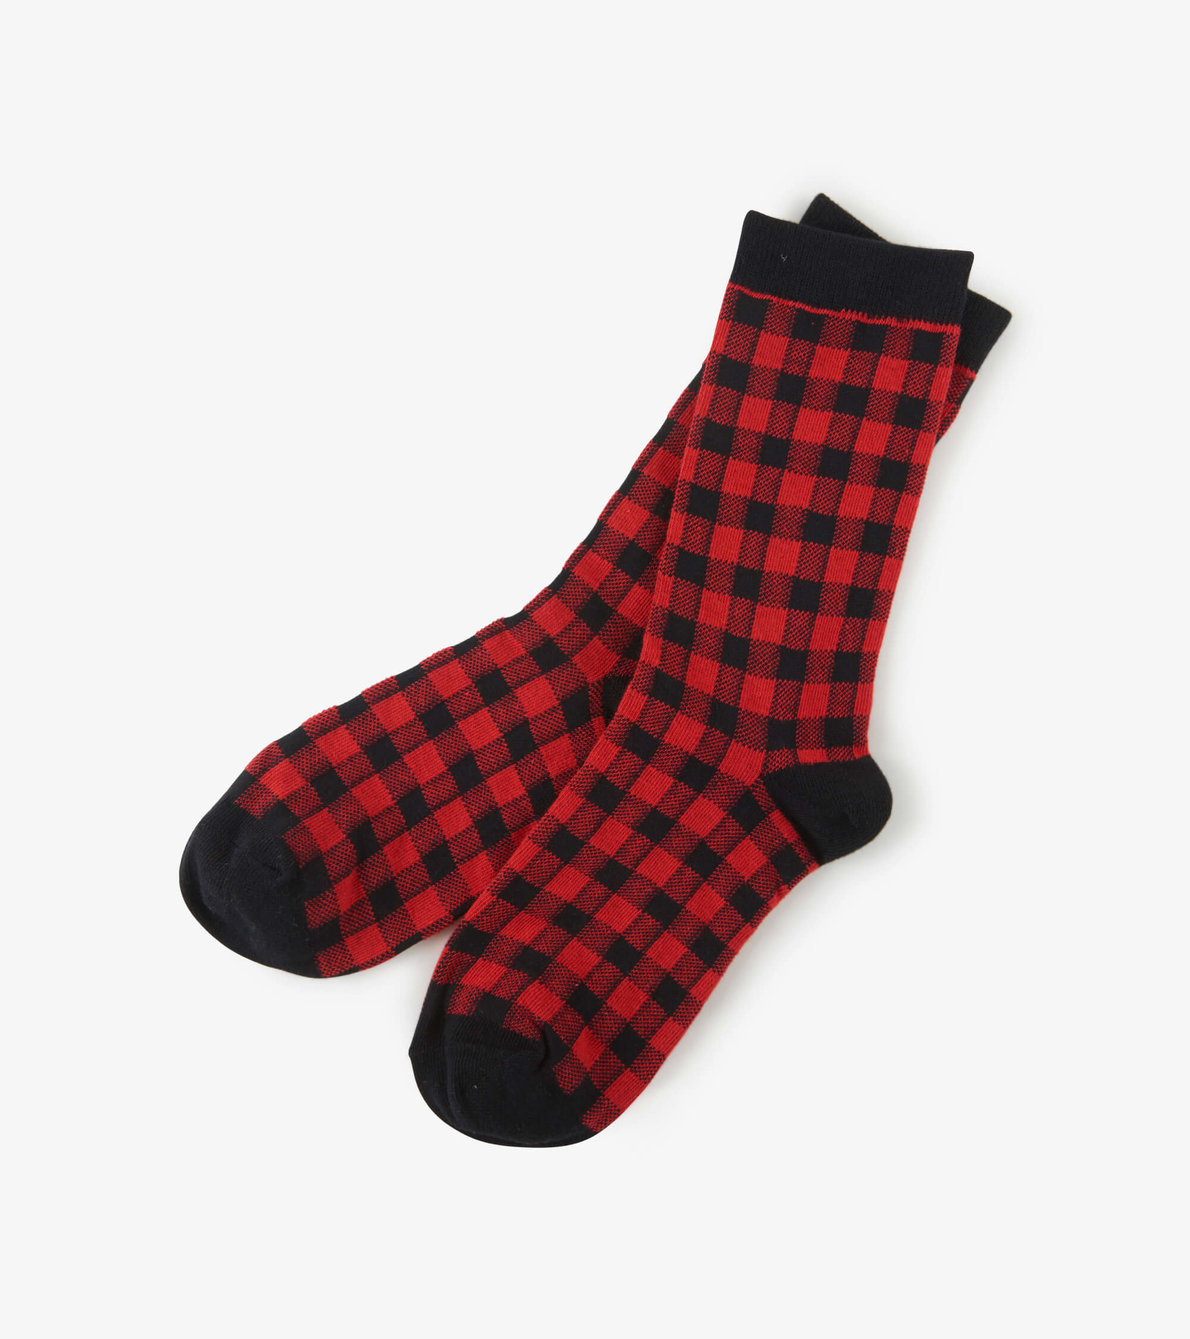 Agrandir l'image de Chaussettes pour homme – Tartan rouge et noir